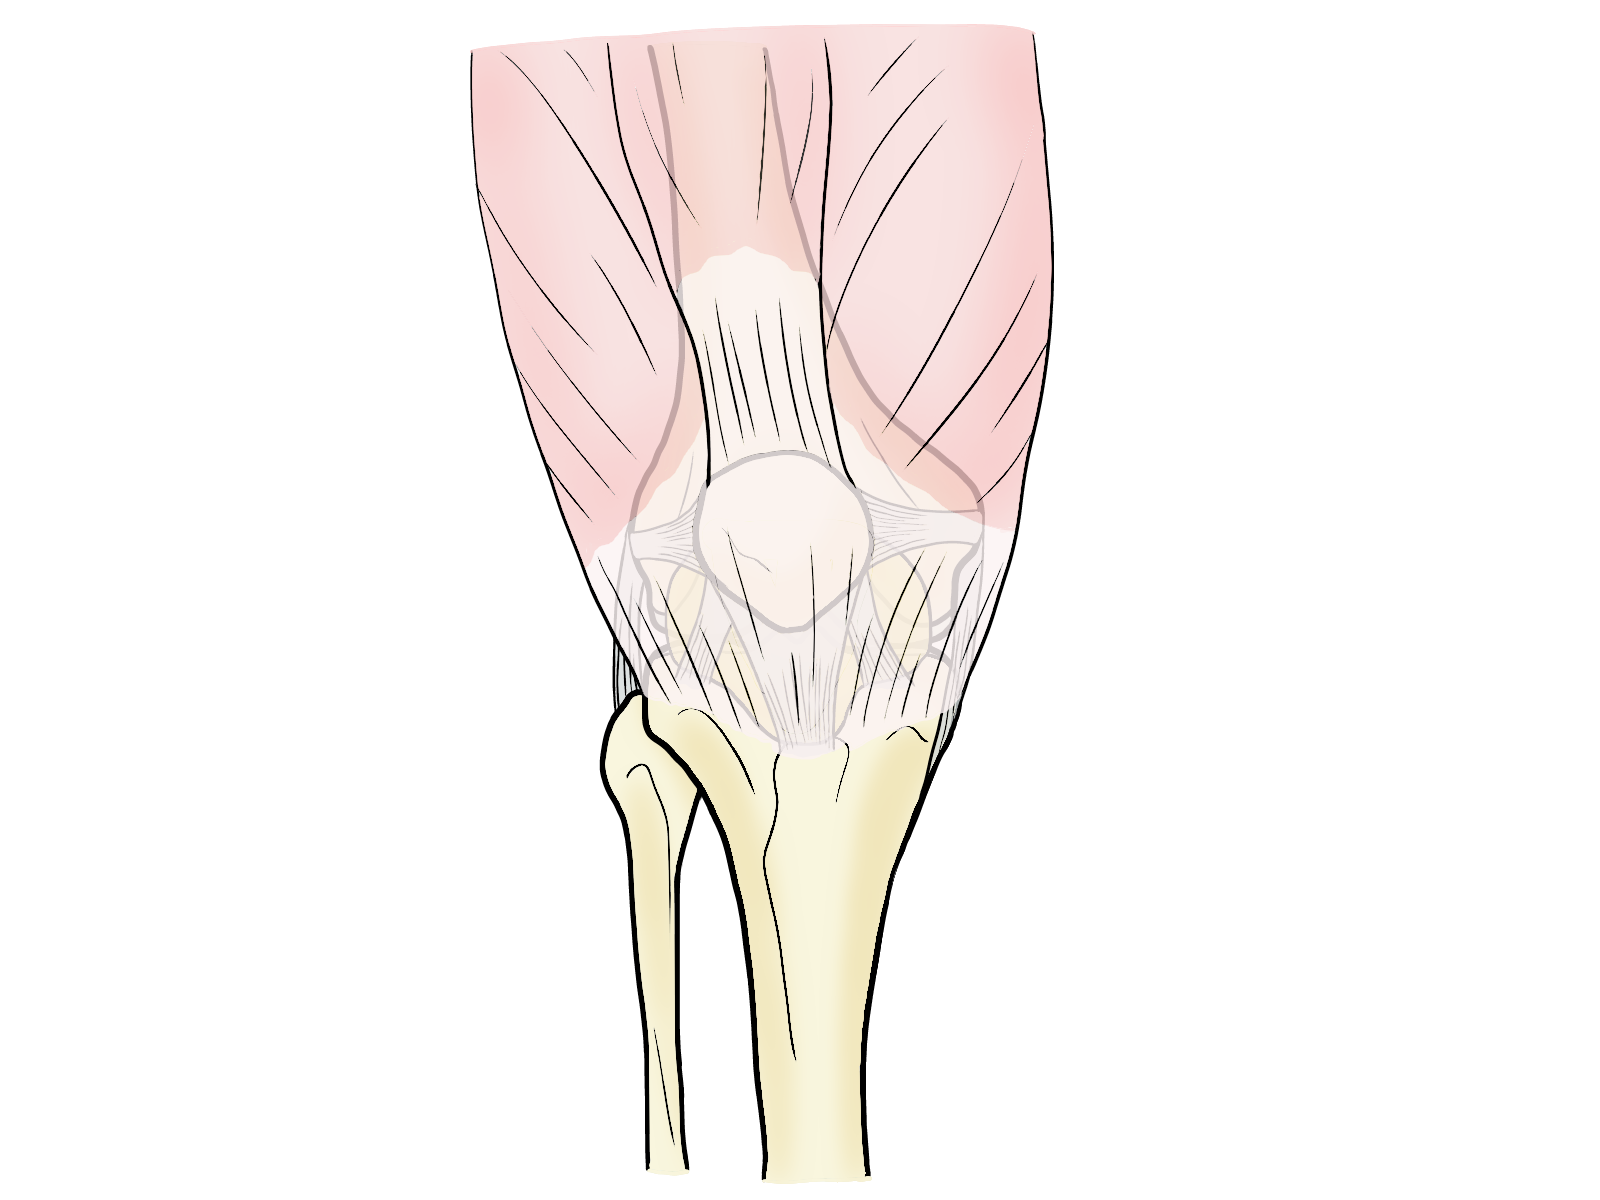 ひざを正面から見たとき、大腿四頭筋が確認できる。大腿四頭筋のイラスト